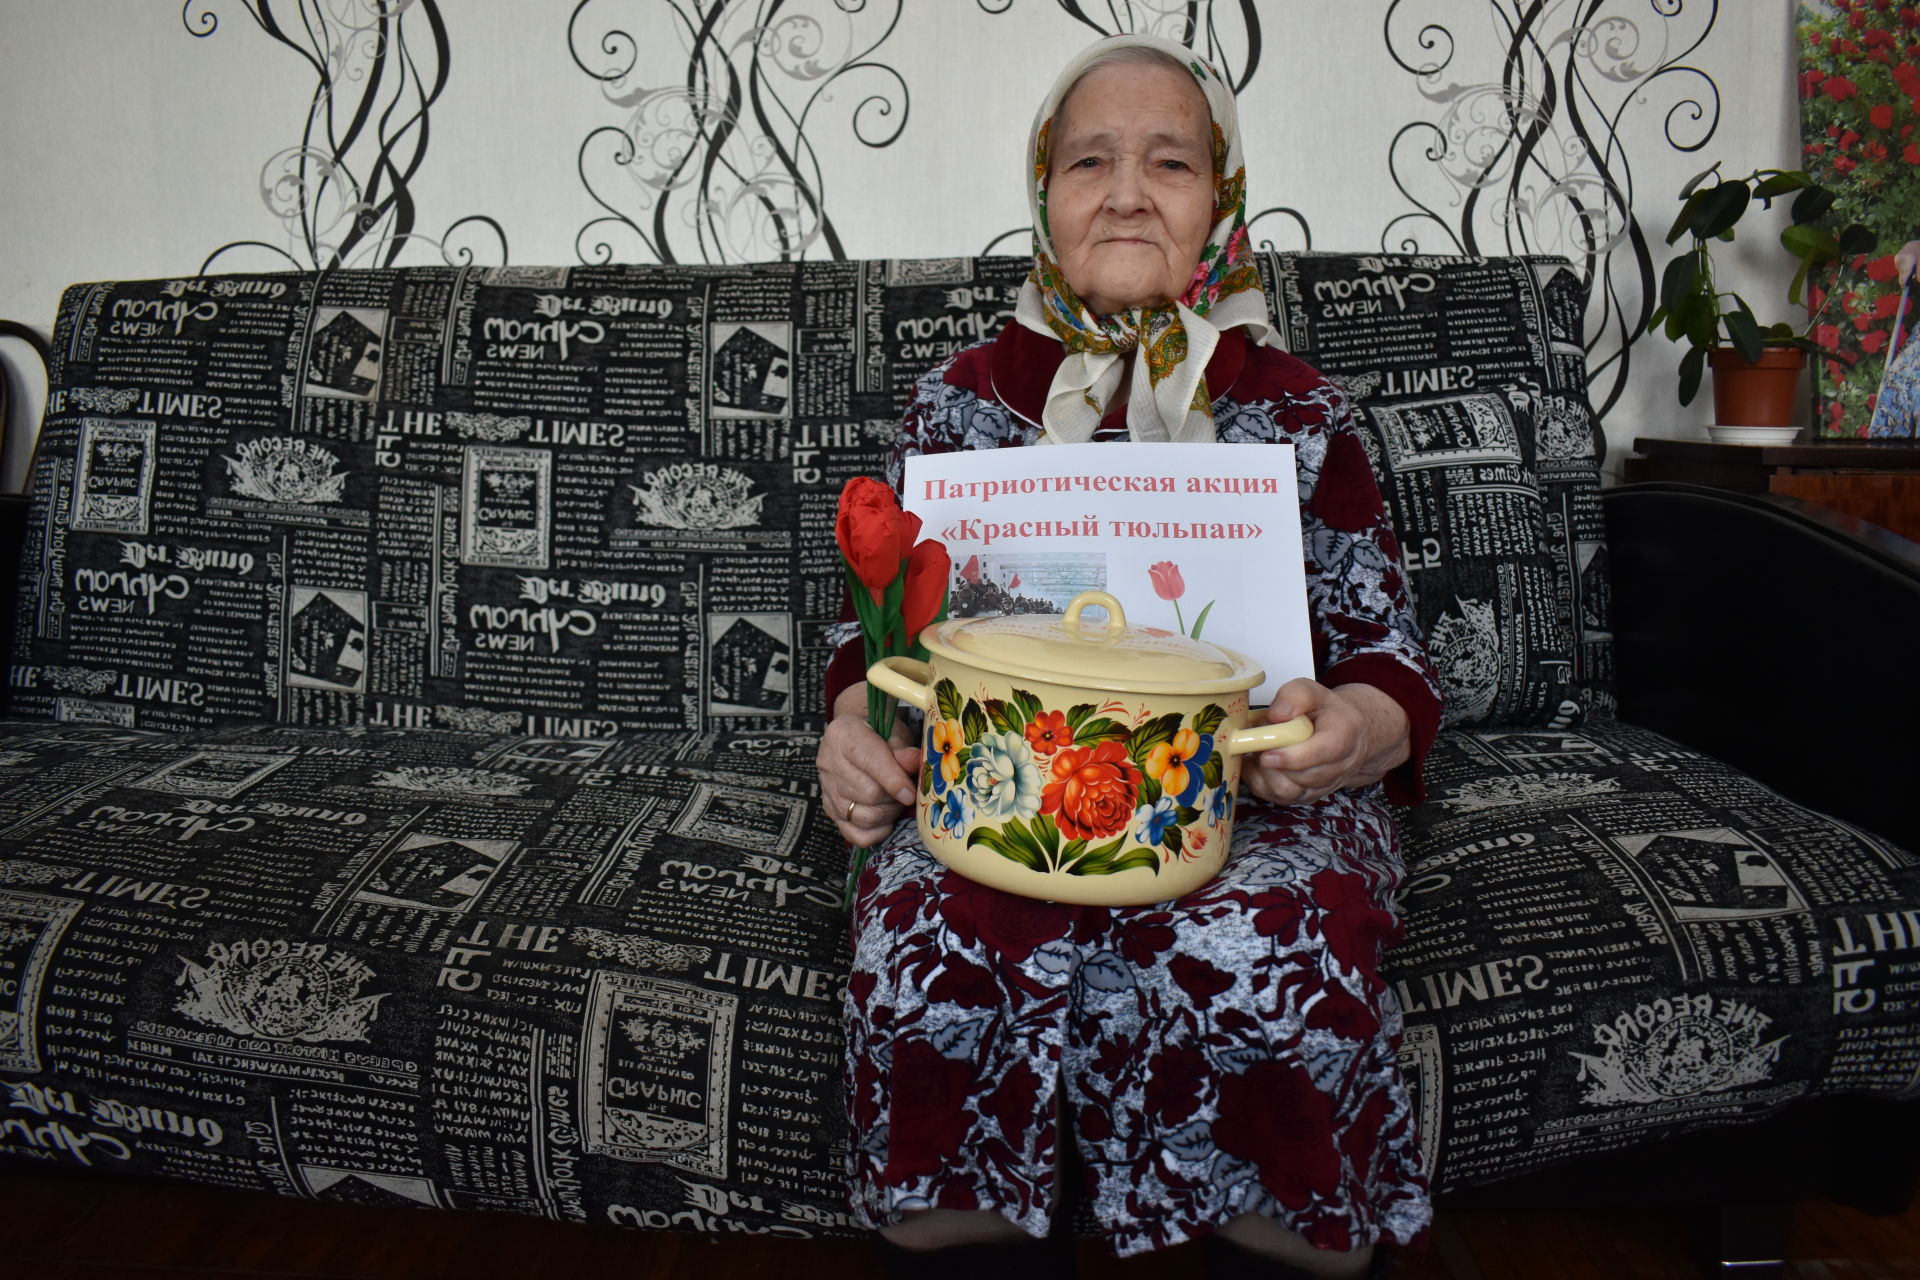 В Князевском сельском поселении прошла патриотическая акция  «Красный тюльпан»